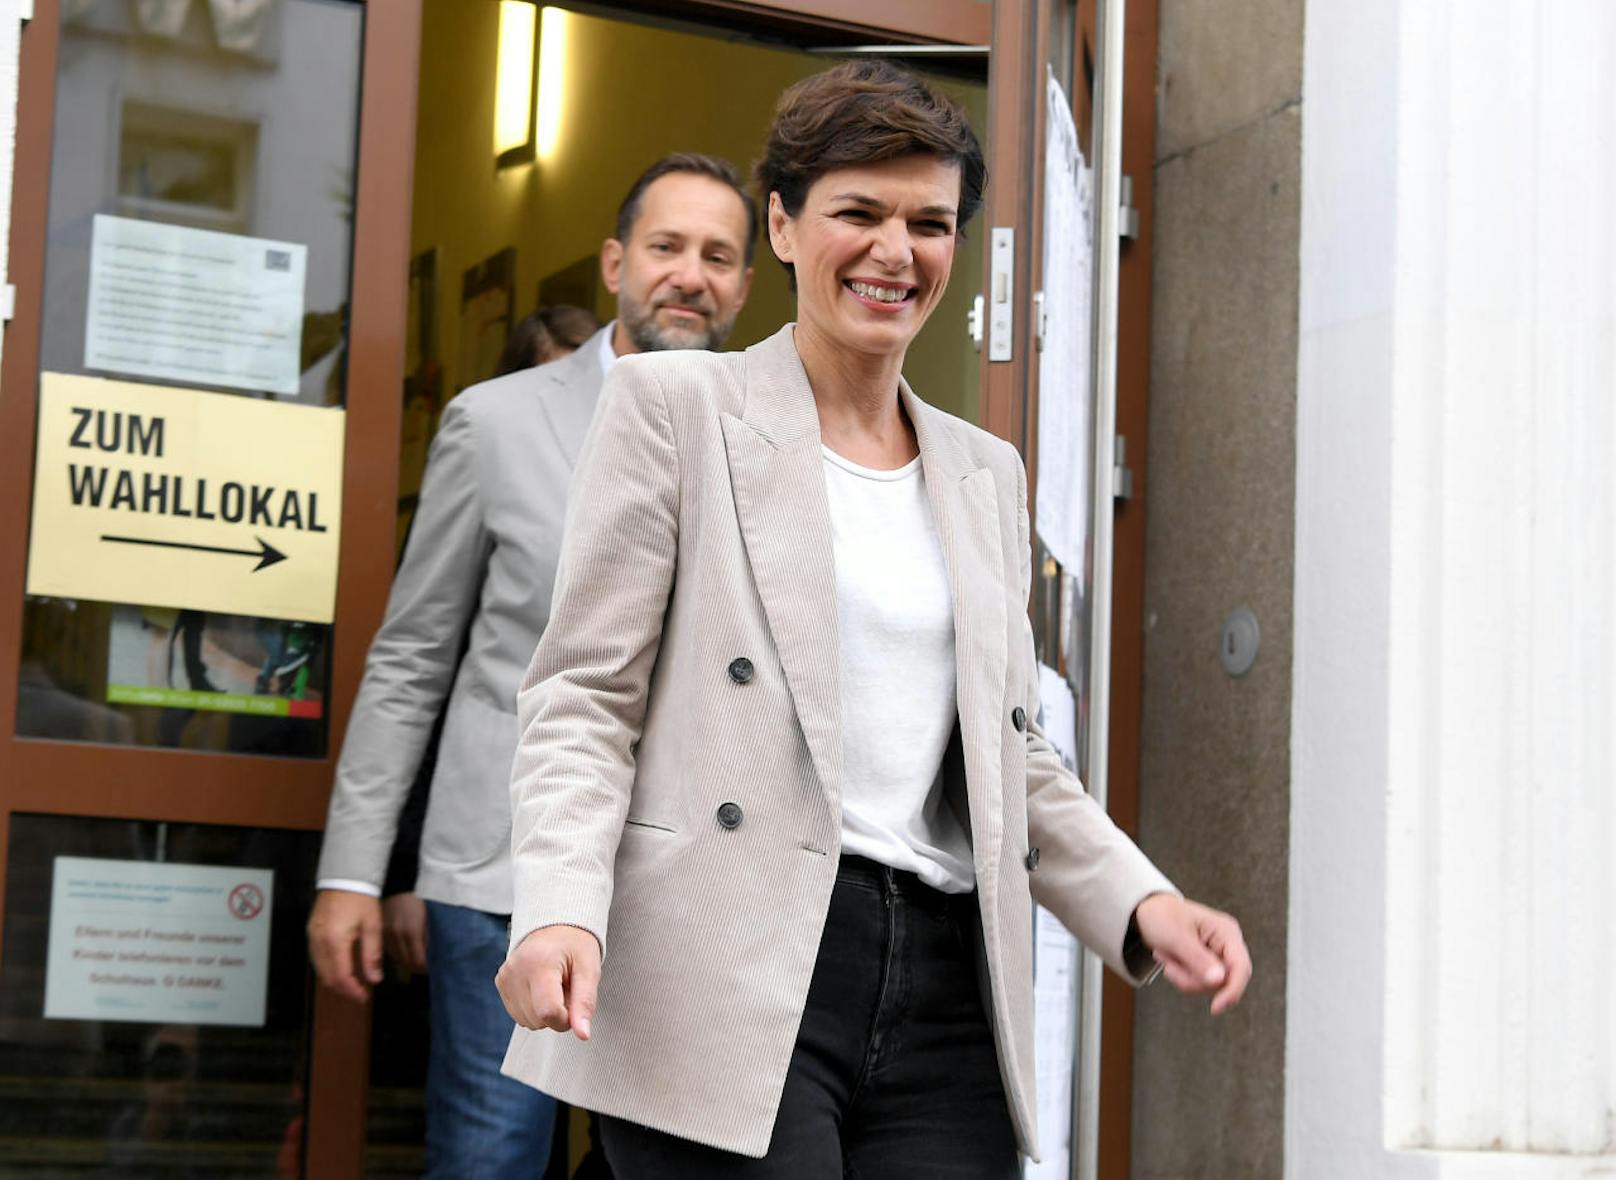 SPÖ-Spitzenkandidatin <b>Pamela Rendi-Wagner</b> mit Ehemann Michael Rendi nach ihrer Stimmabgabe in der Wiener Volksschule Stubenbastei.